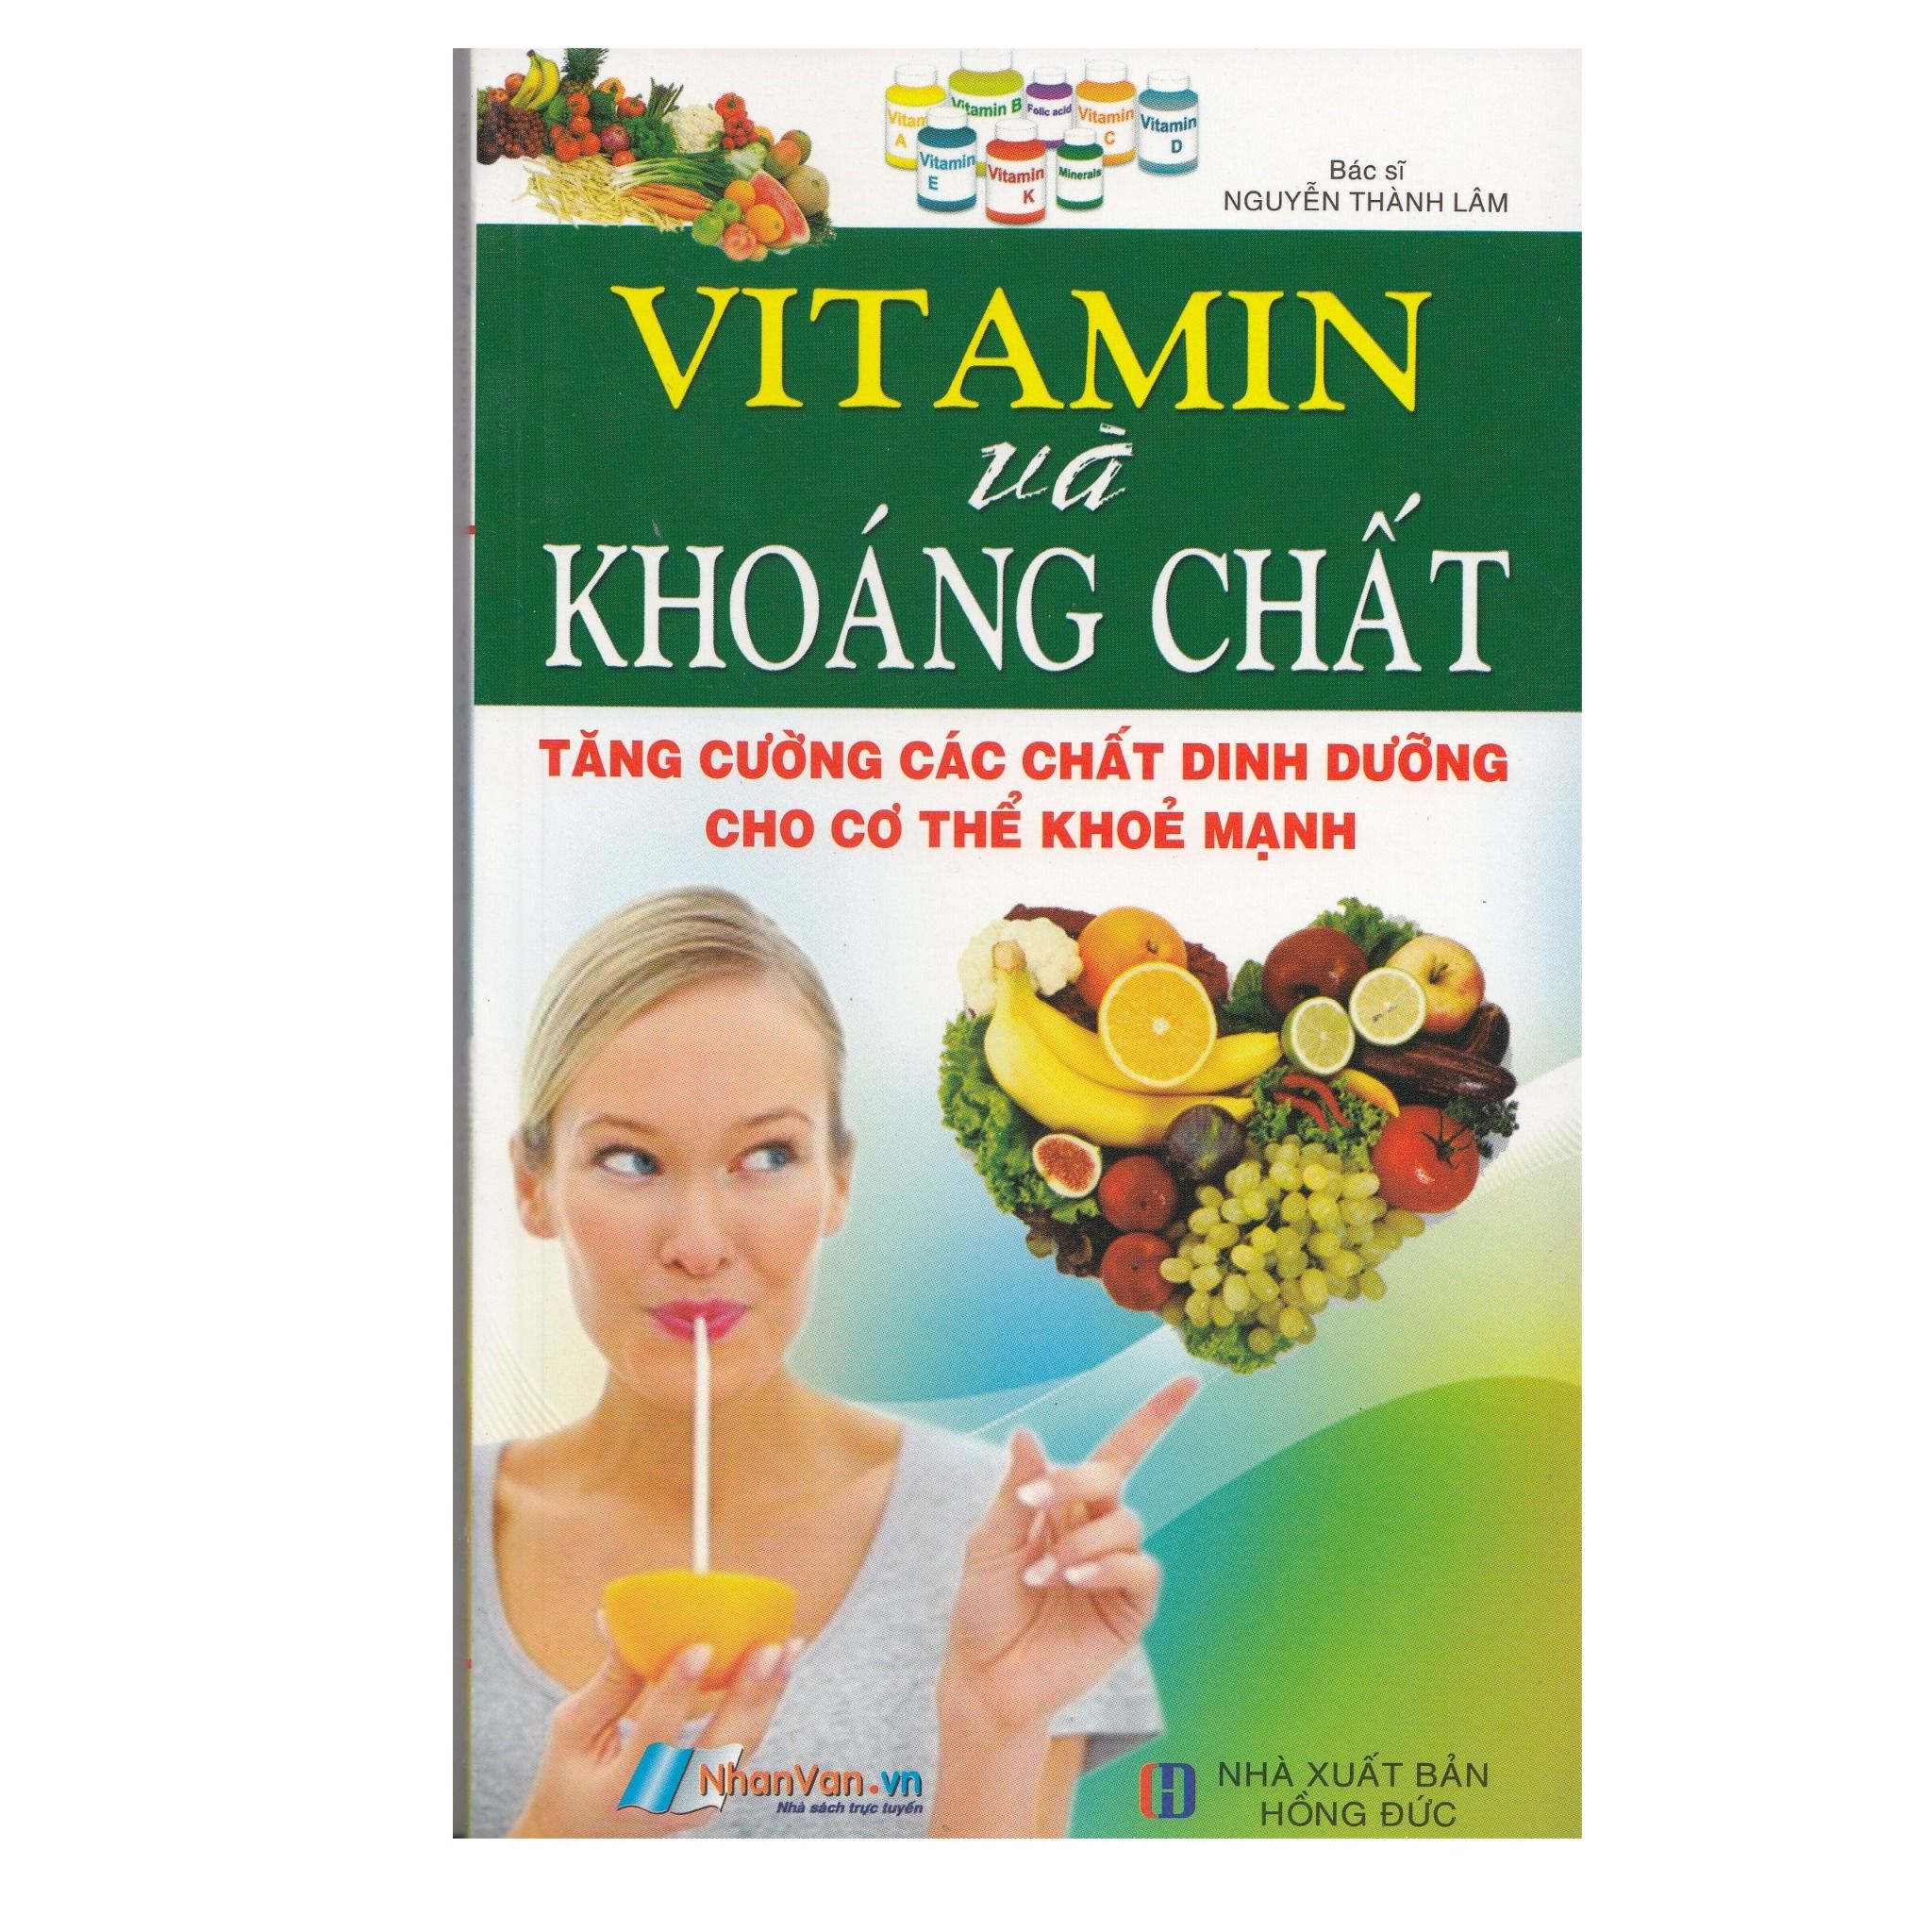  Vitamin Và Khoáng Chất - Tăng Cường Các Chất Dinh Dưỡng Cho Cơ Thể Khỏe Mạnh 